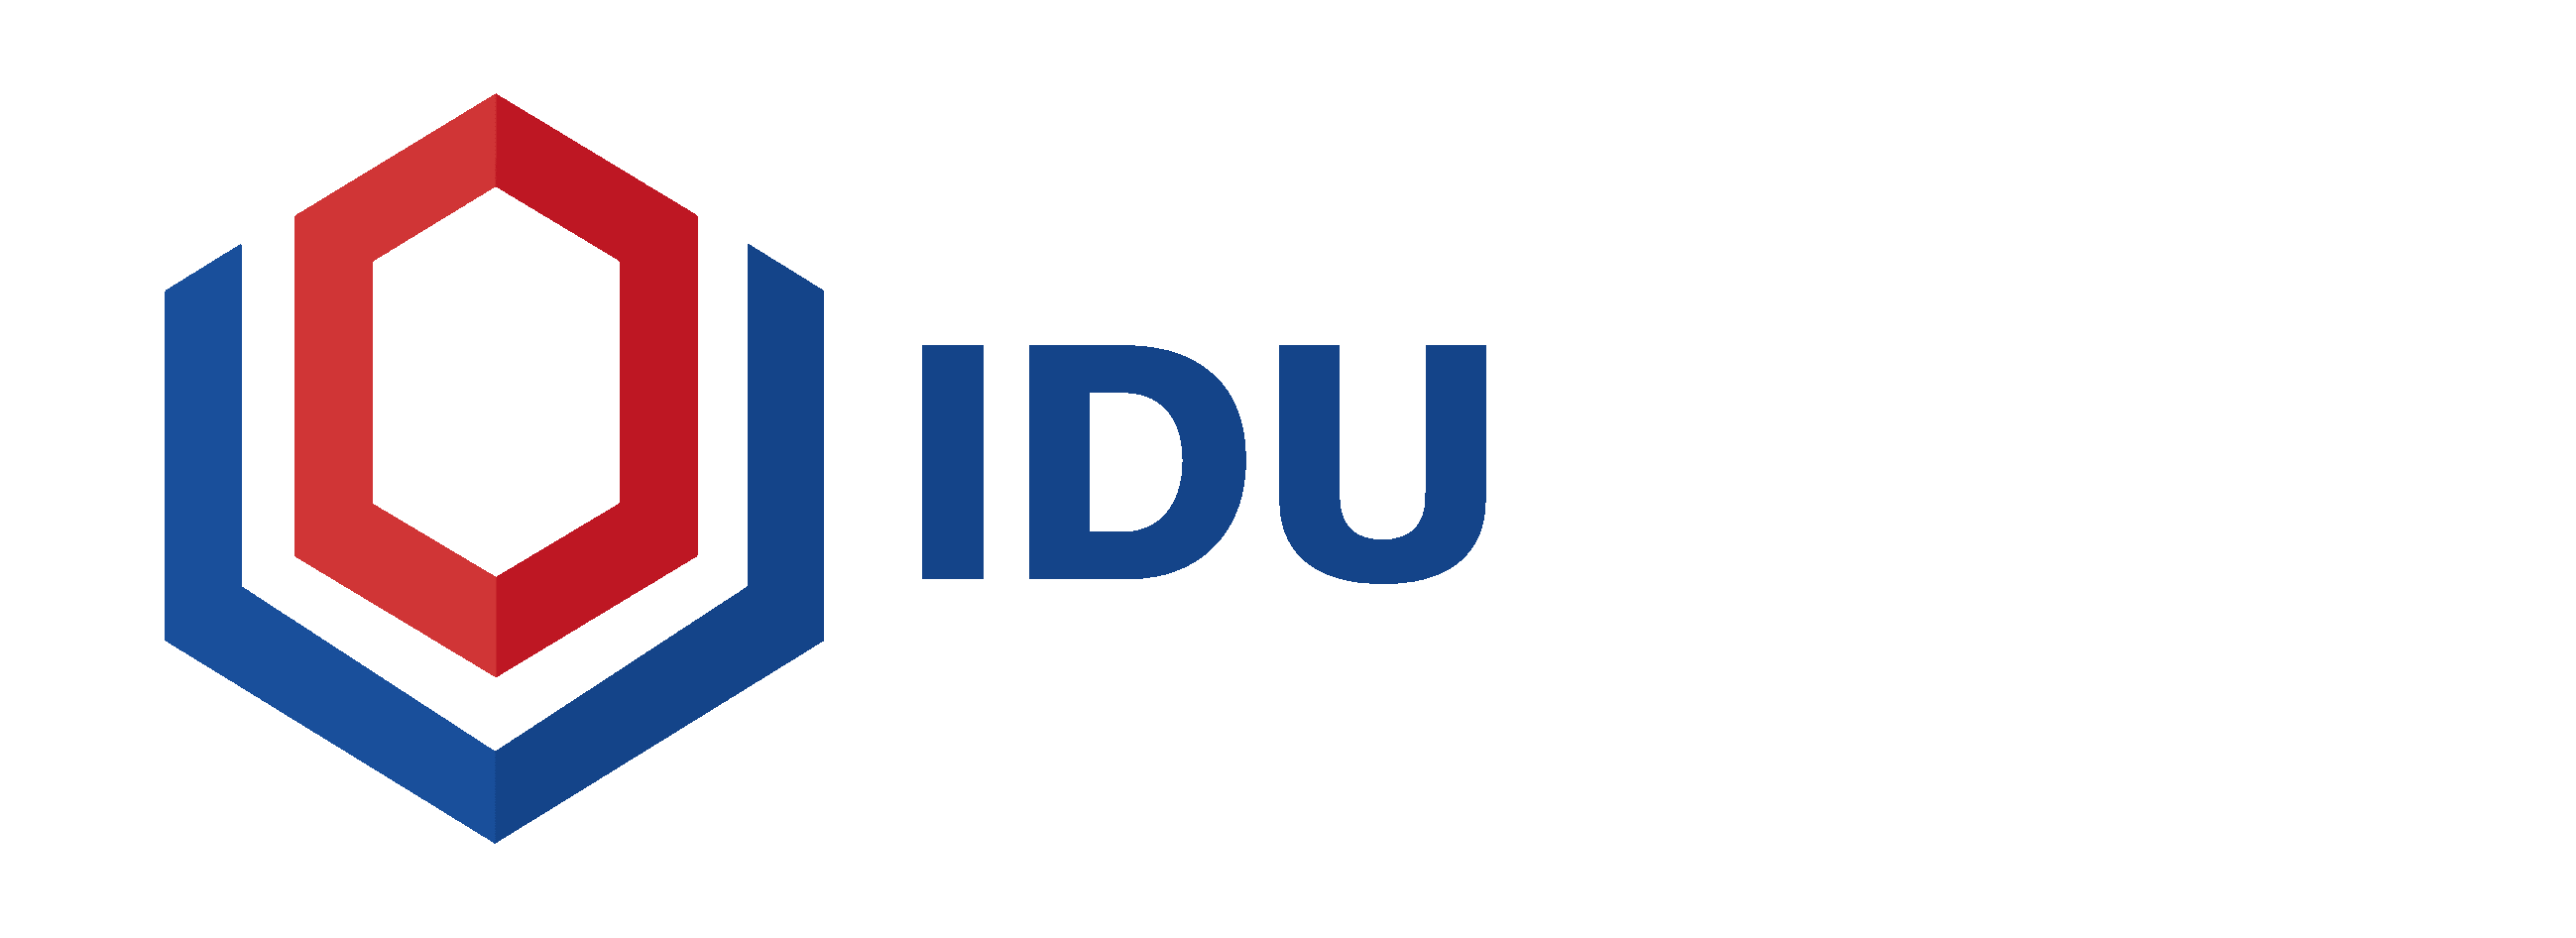 Supplemental Executive Retirement Plan - Business Insurance | IDU